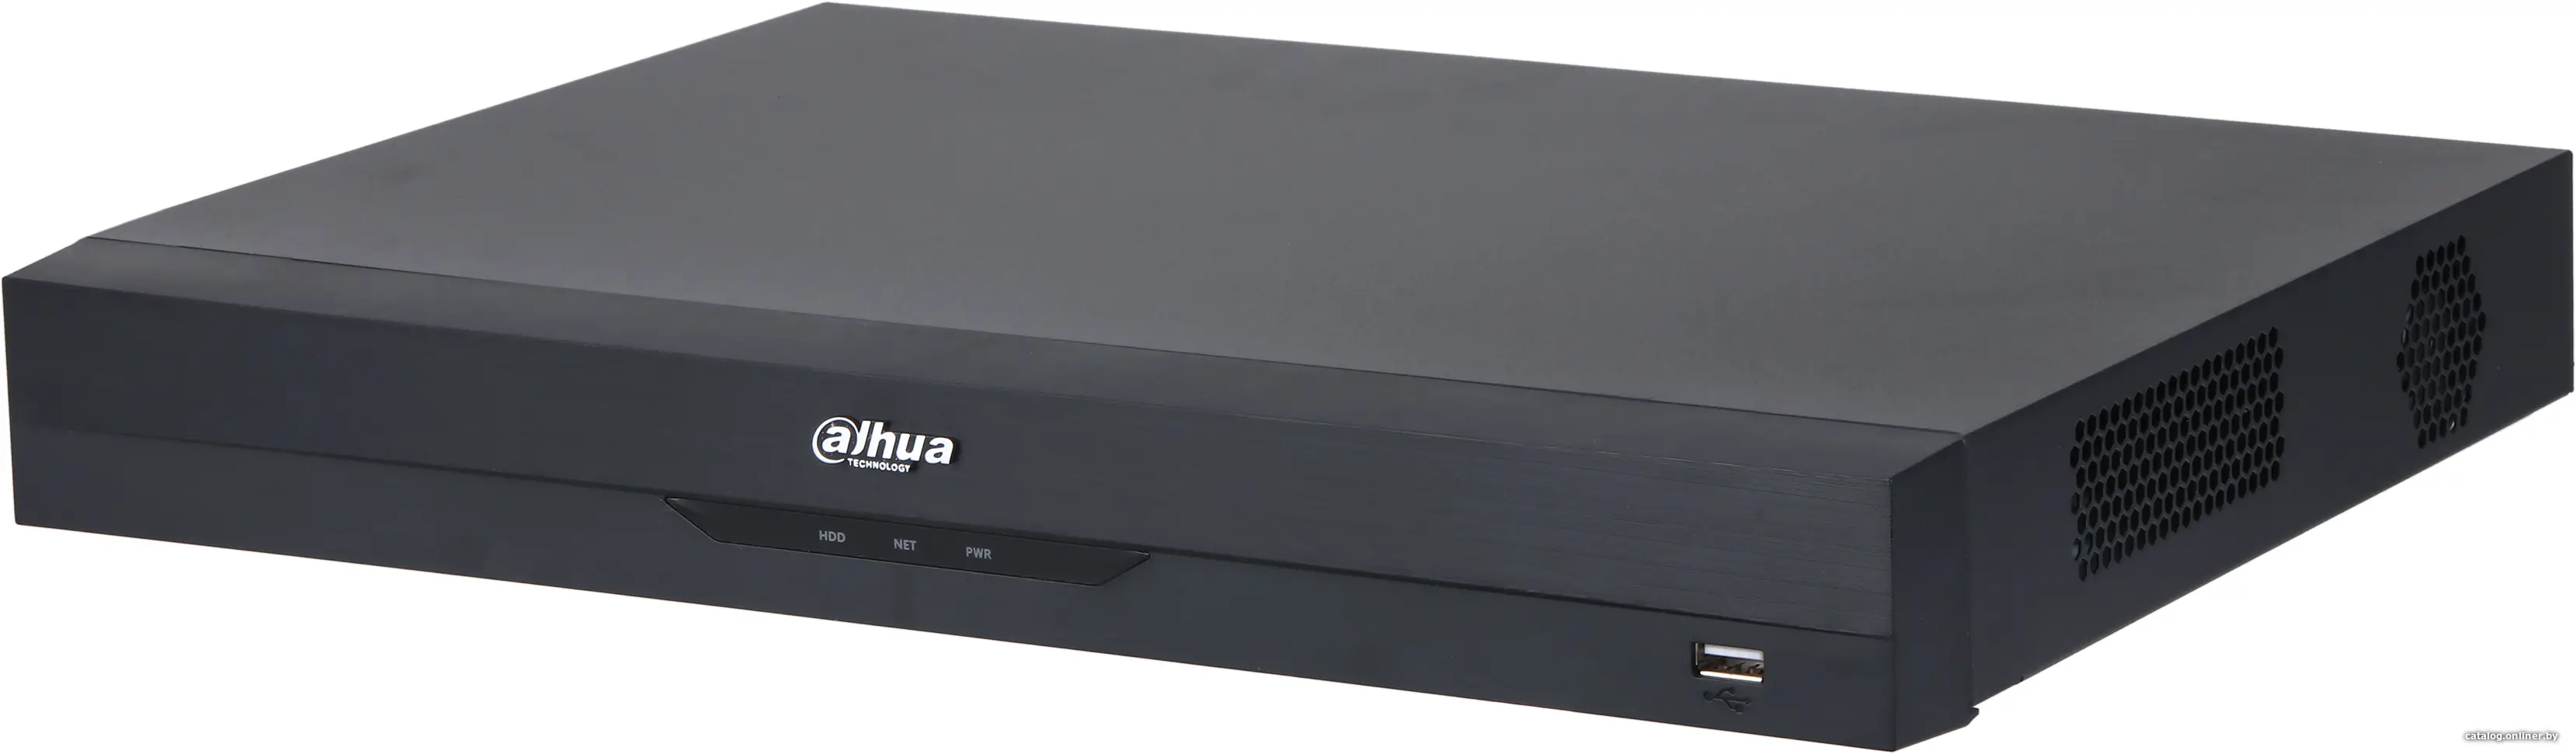 Купить IP-видеорегистратор Dahua DHI-NVR2208-8P-I2, цена, опт и розница